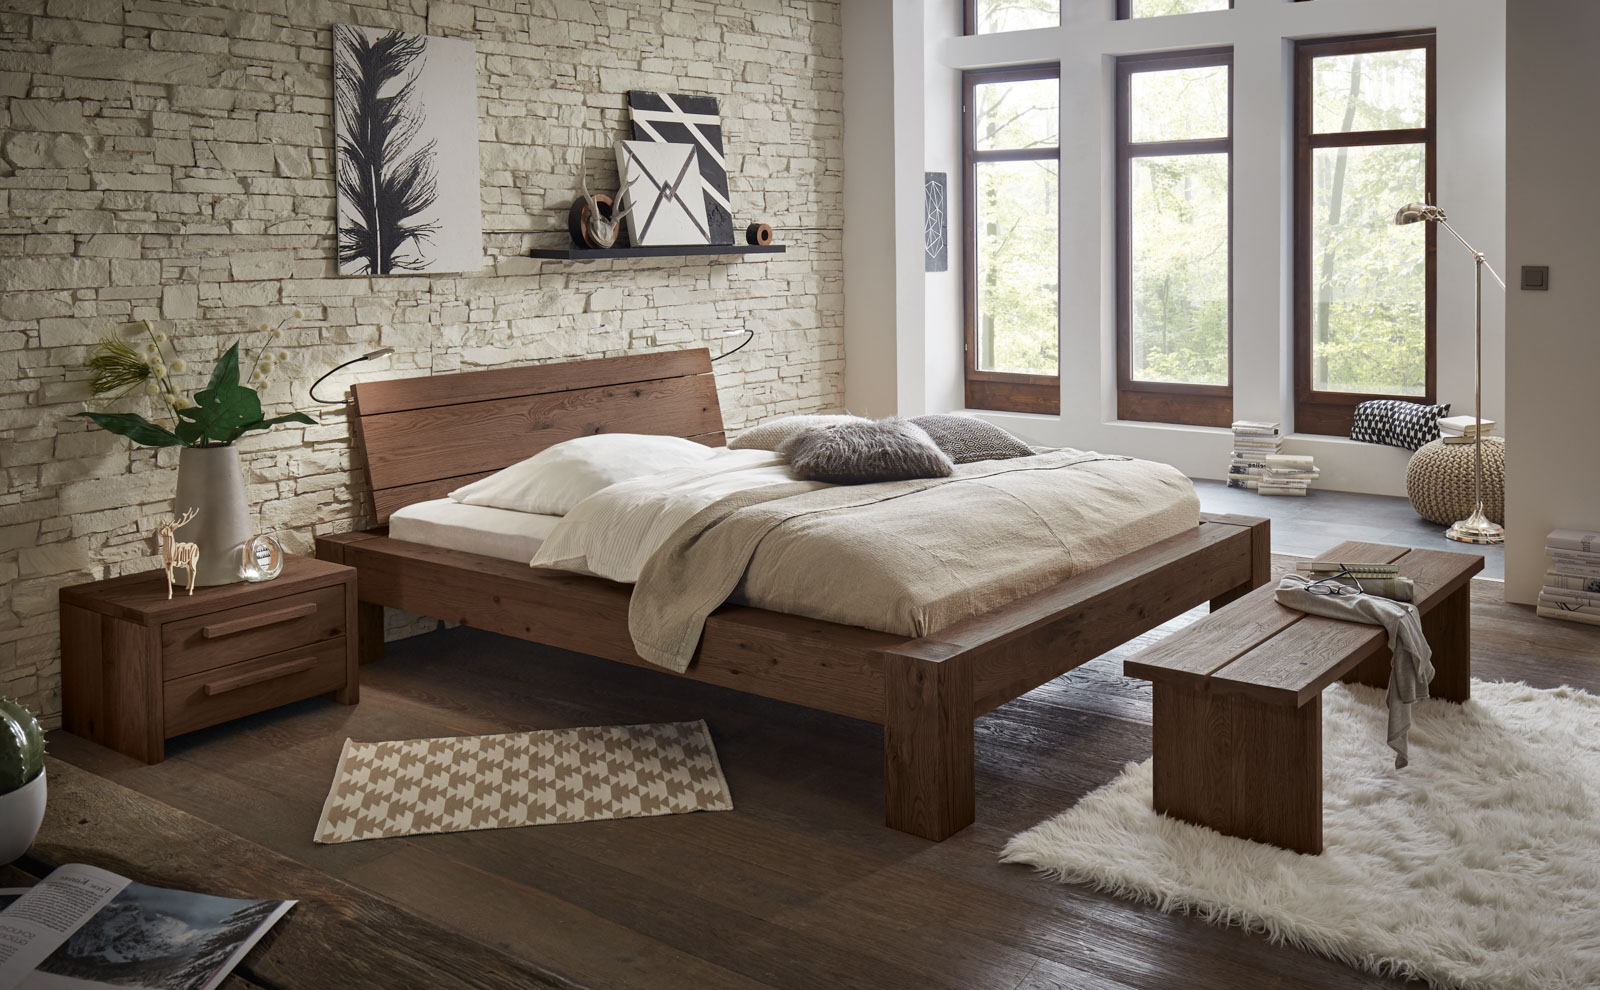 Bett der Oak Wild-Linie von Hasena mit beigen Bettwaren, passender Bank und Nachttisch in einem hellen Raum